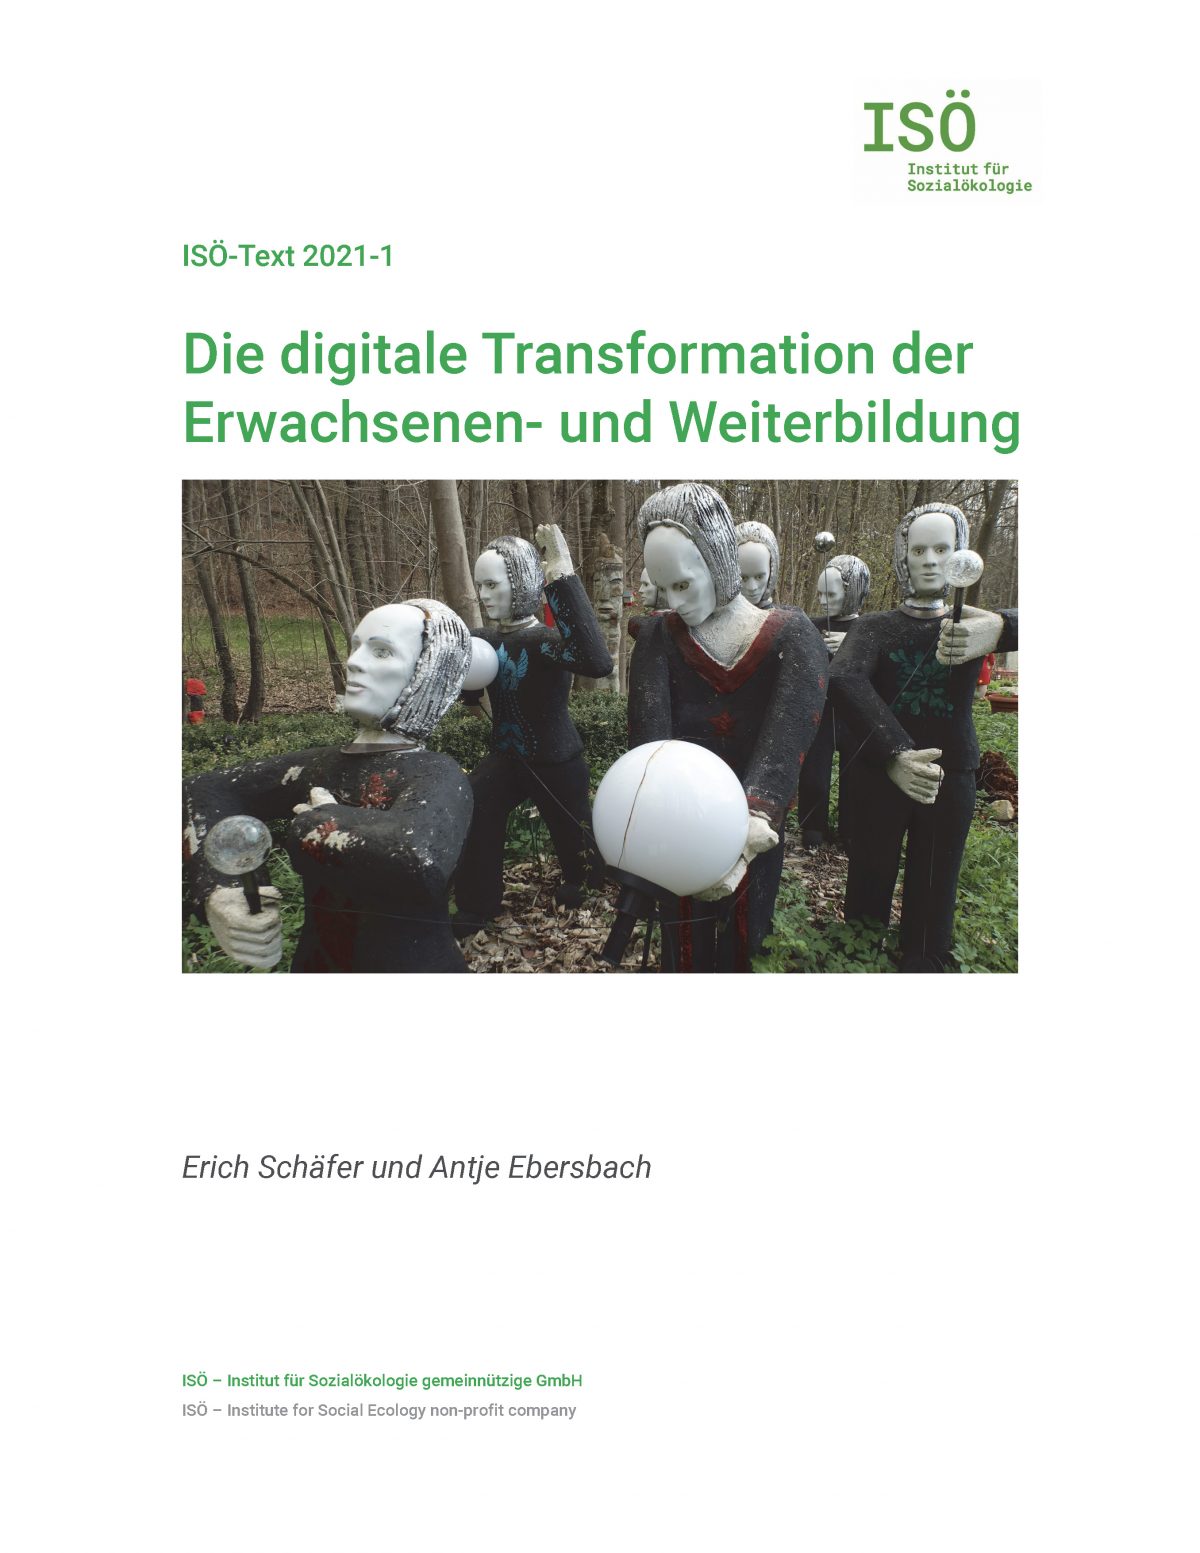 Erich Schäfer/Antje Ebersbach, Die digitale Transformation der Erwachsenen- und Weiterbildung (ISÖ-Text 2021-1) 